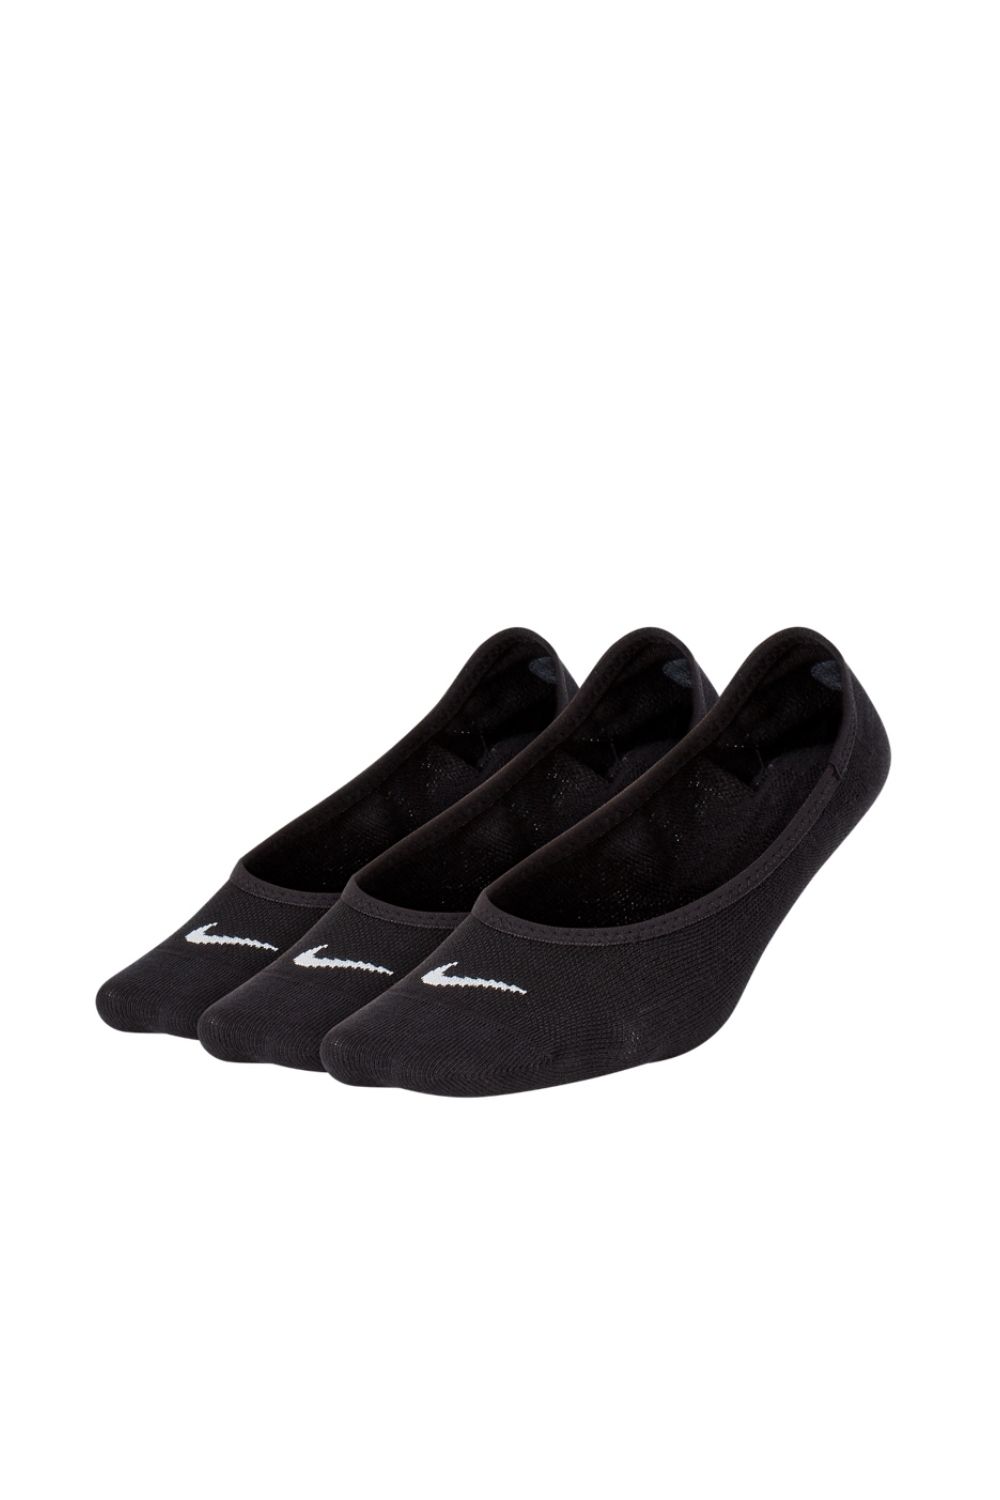 NIKE – Σετ γυναικείες κάλτσες 3 τμχ Nike Lightweight Footie Training Sock μαύρες 1311482.1-7191